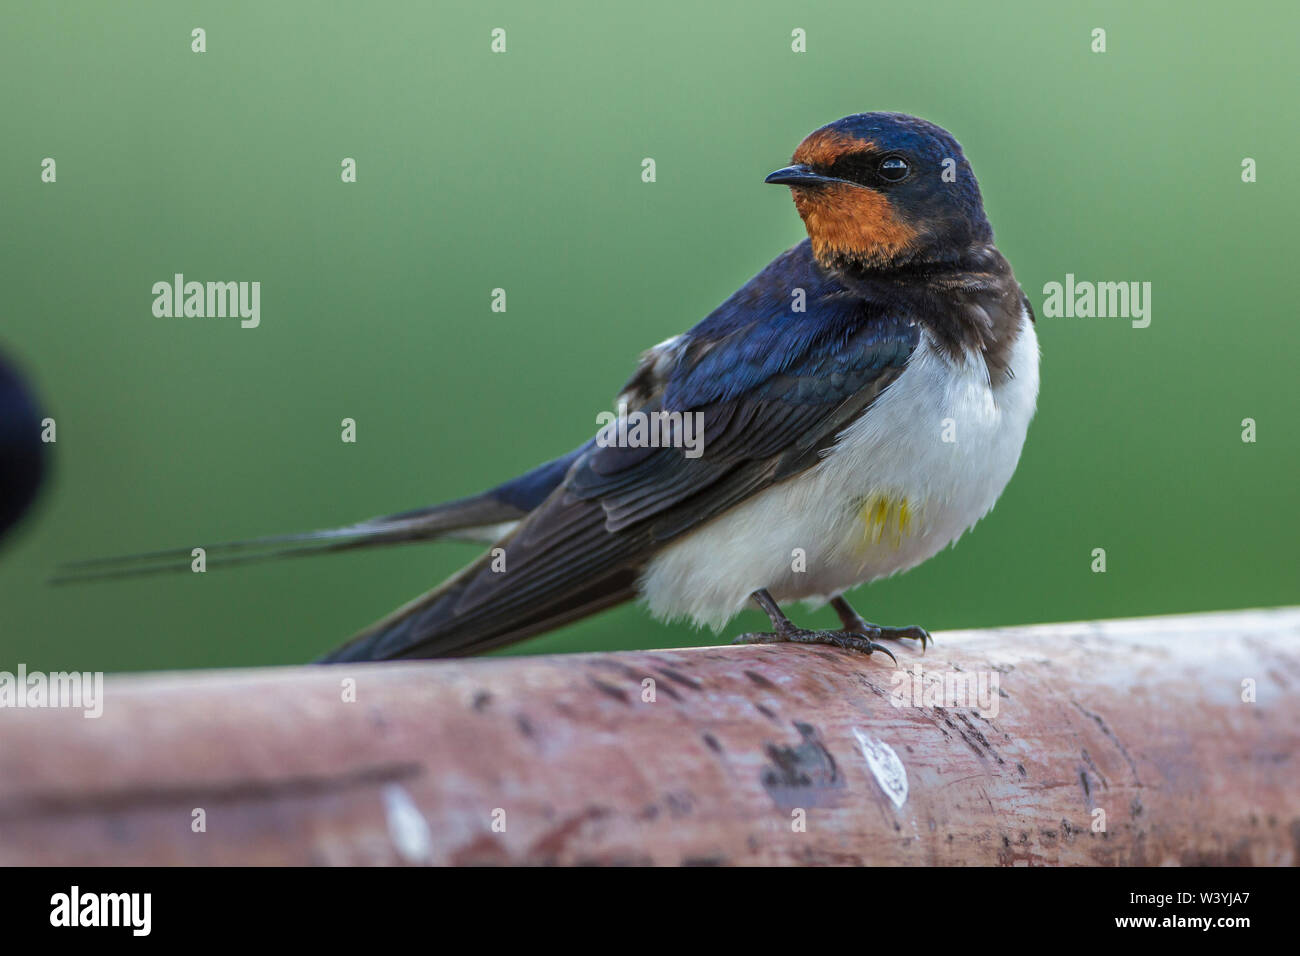 Barn swallow, Rauchschwalbe (Hirundo rustica) Stock Photo